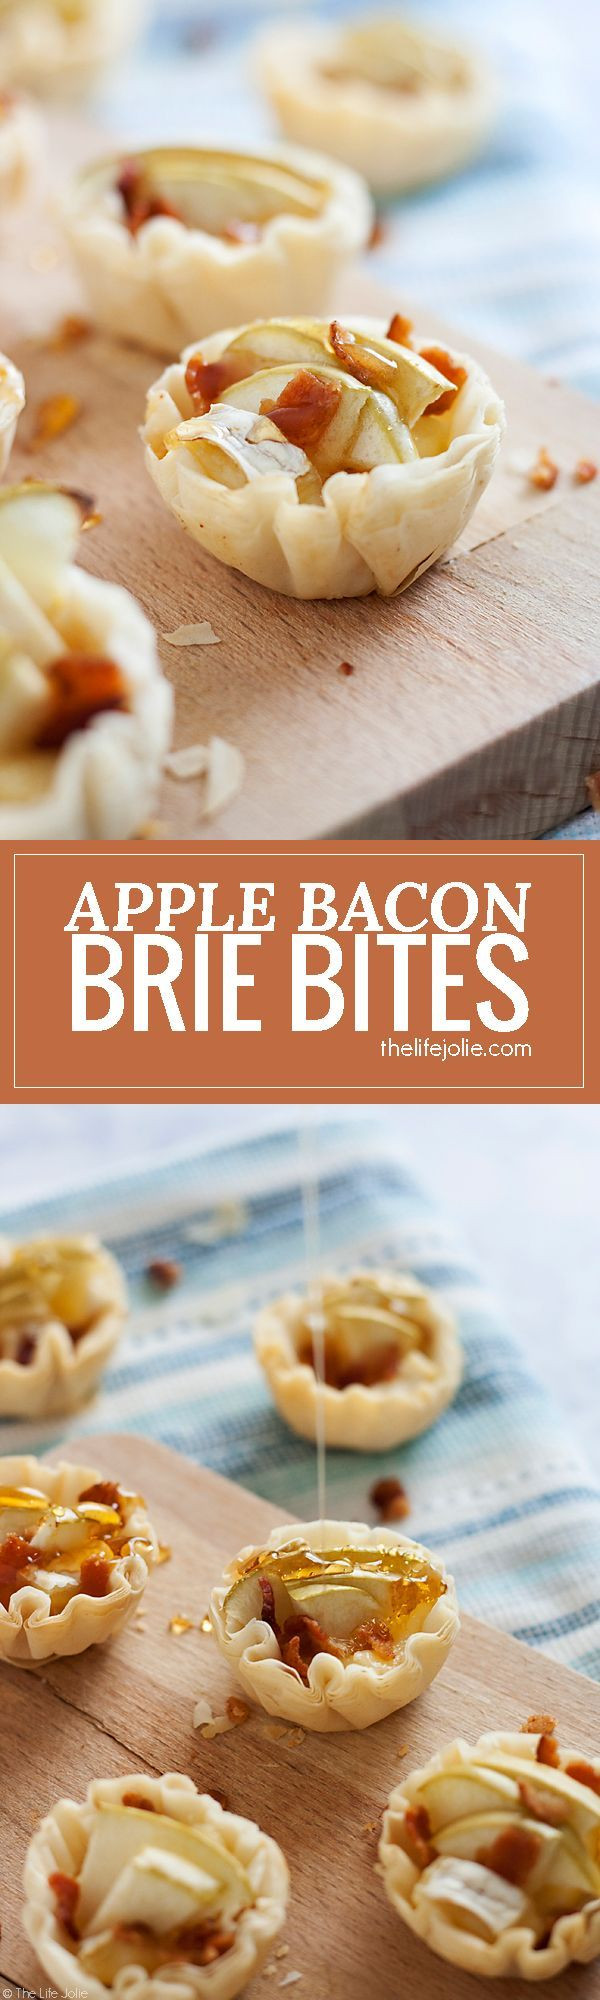 Easy Bacon Recipes Appetizers
 De 25 bästa idéerna om Hors d oeuvres hittar du på